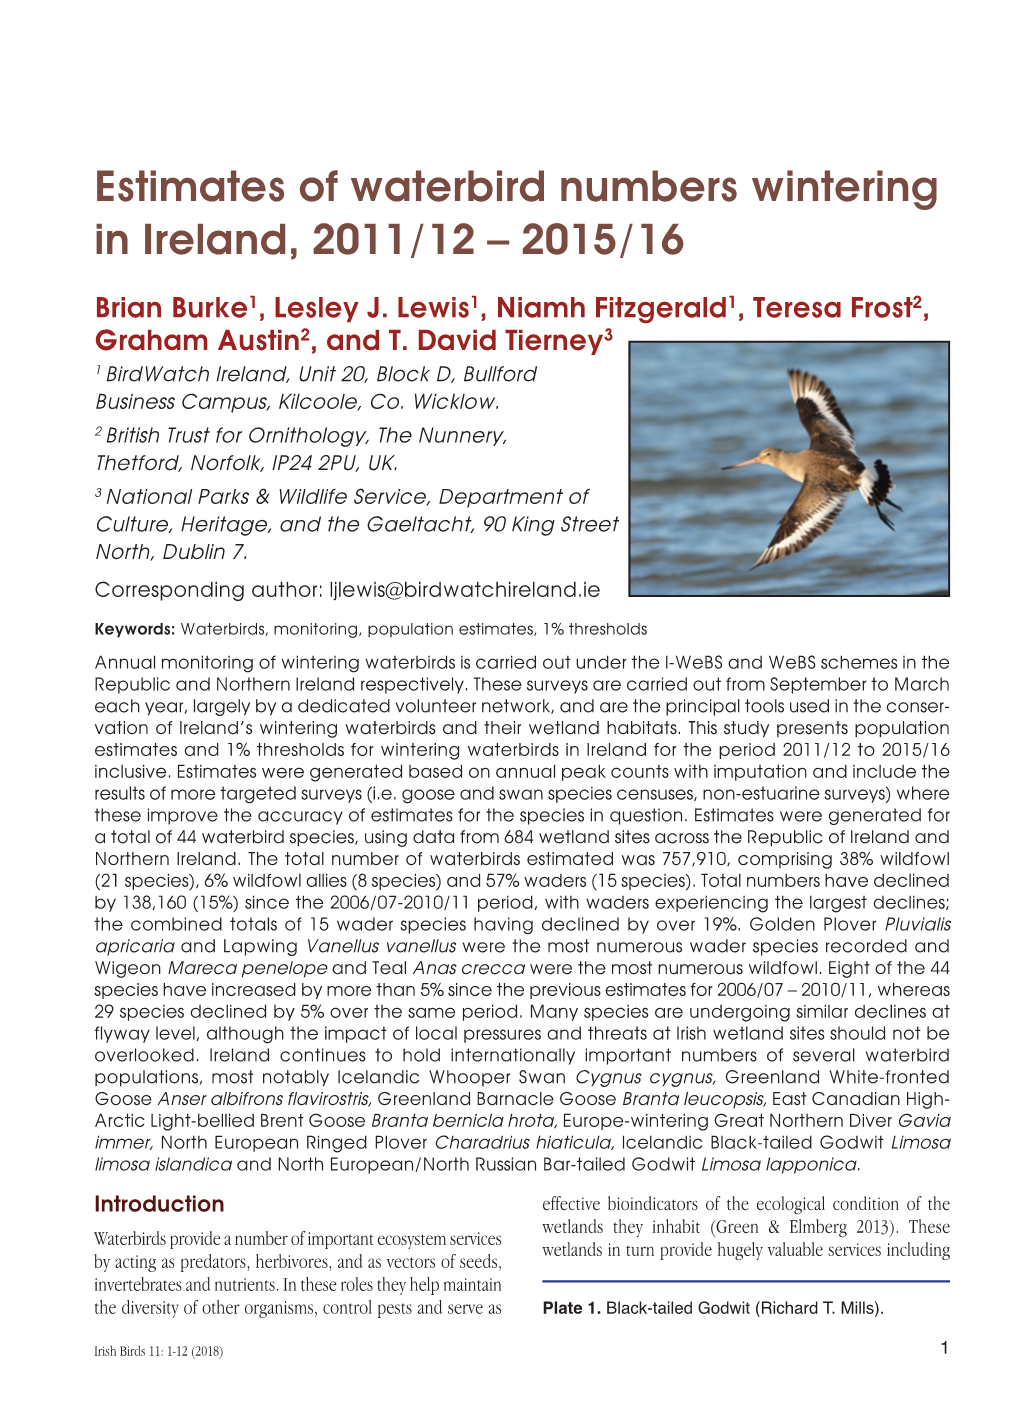 Estimates of Waterbird Numbers Wintering in Ireland, 2011/12 – 2015/16